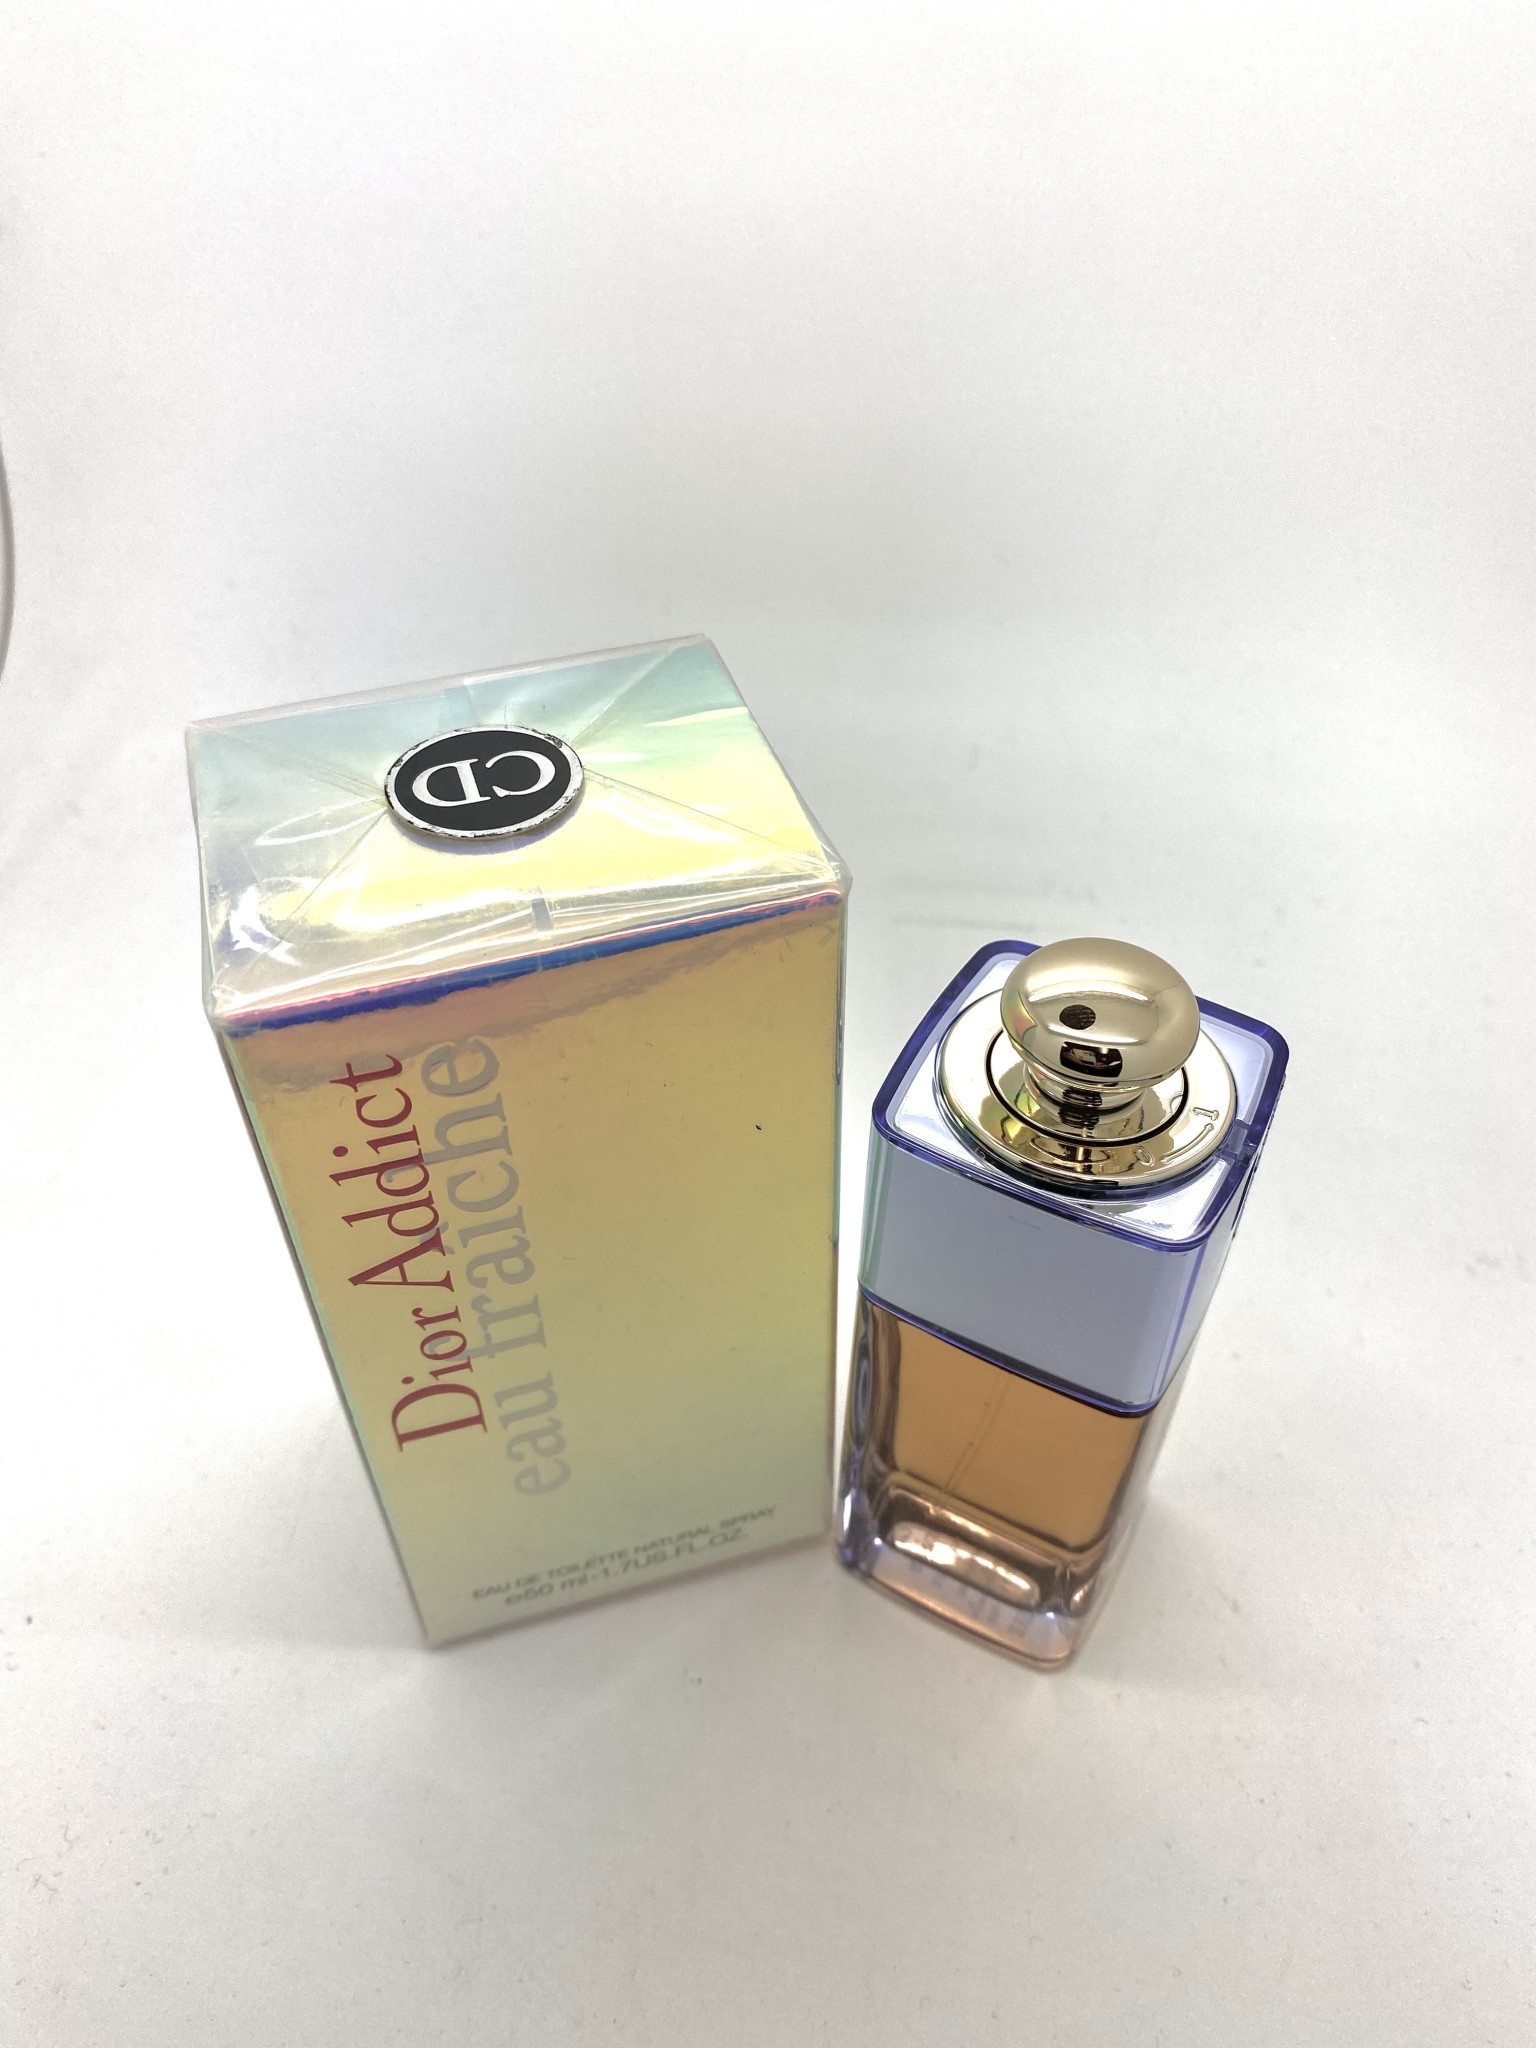 Classic Perfume Parfum Eau Fraiche Eau de Toilette Natural Spray 100ml NEW